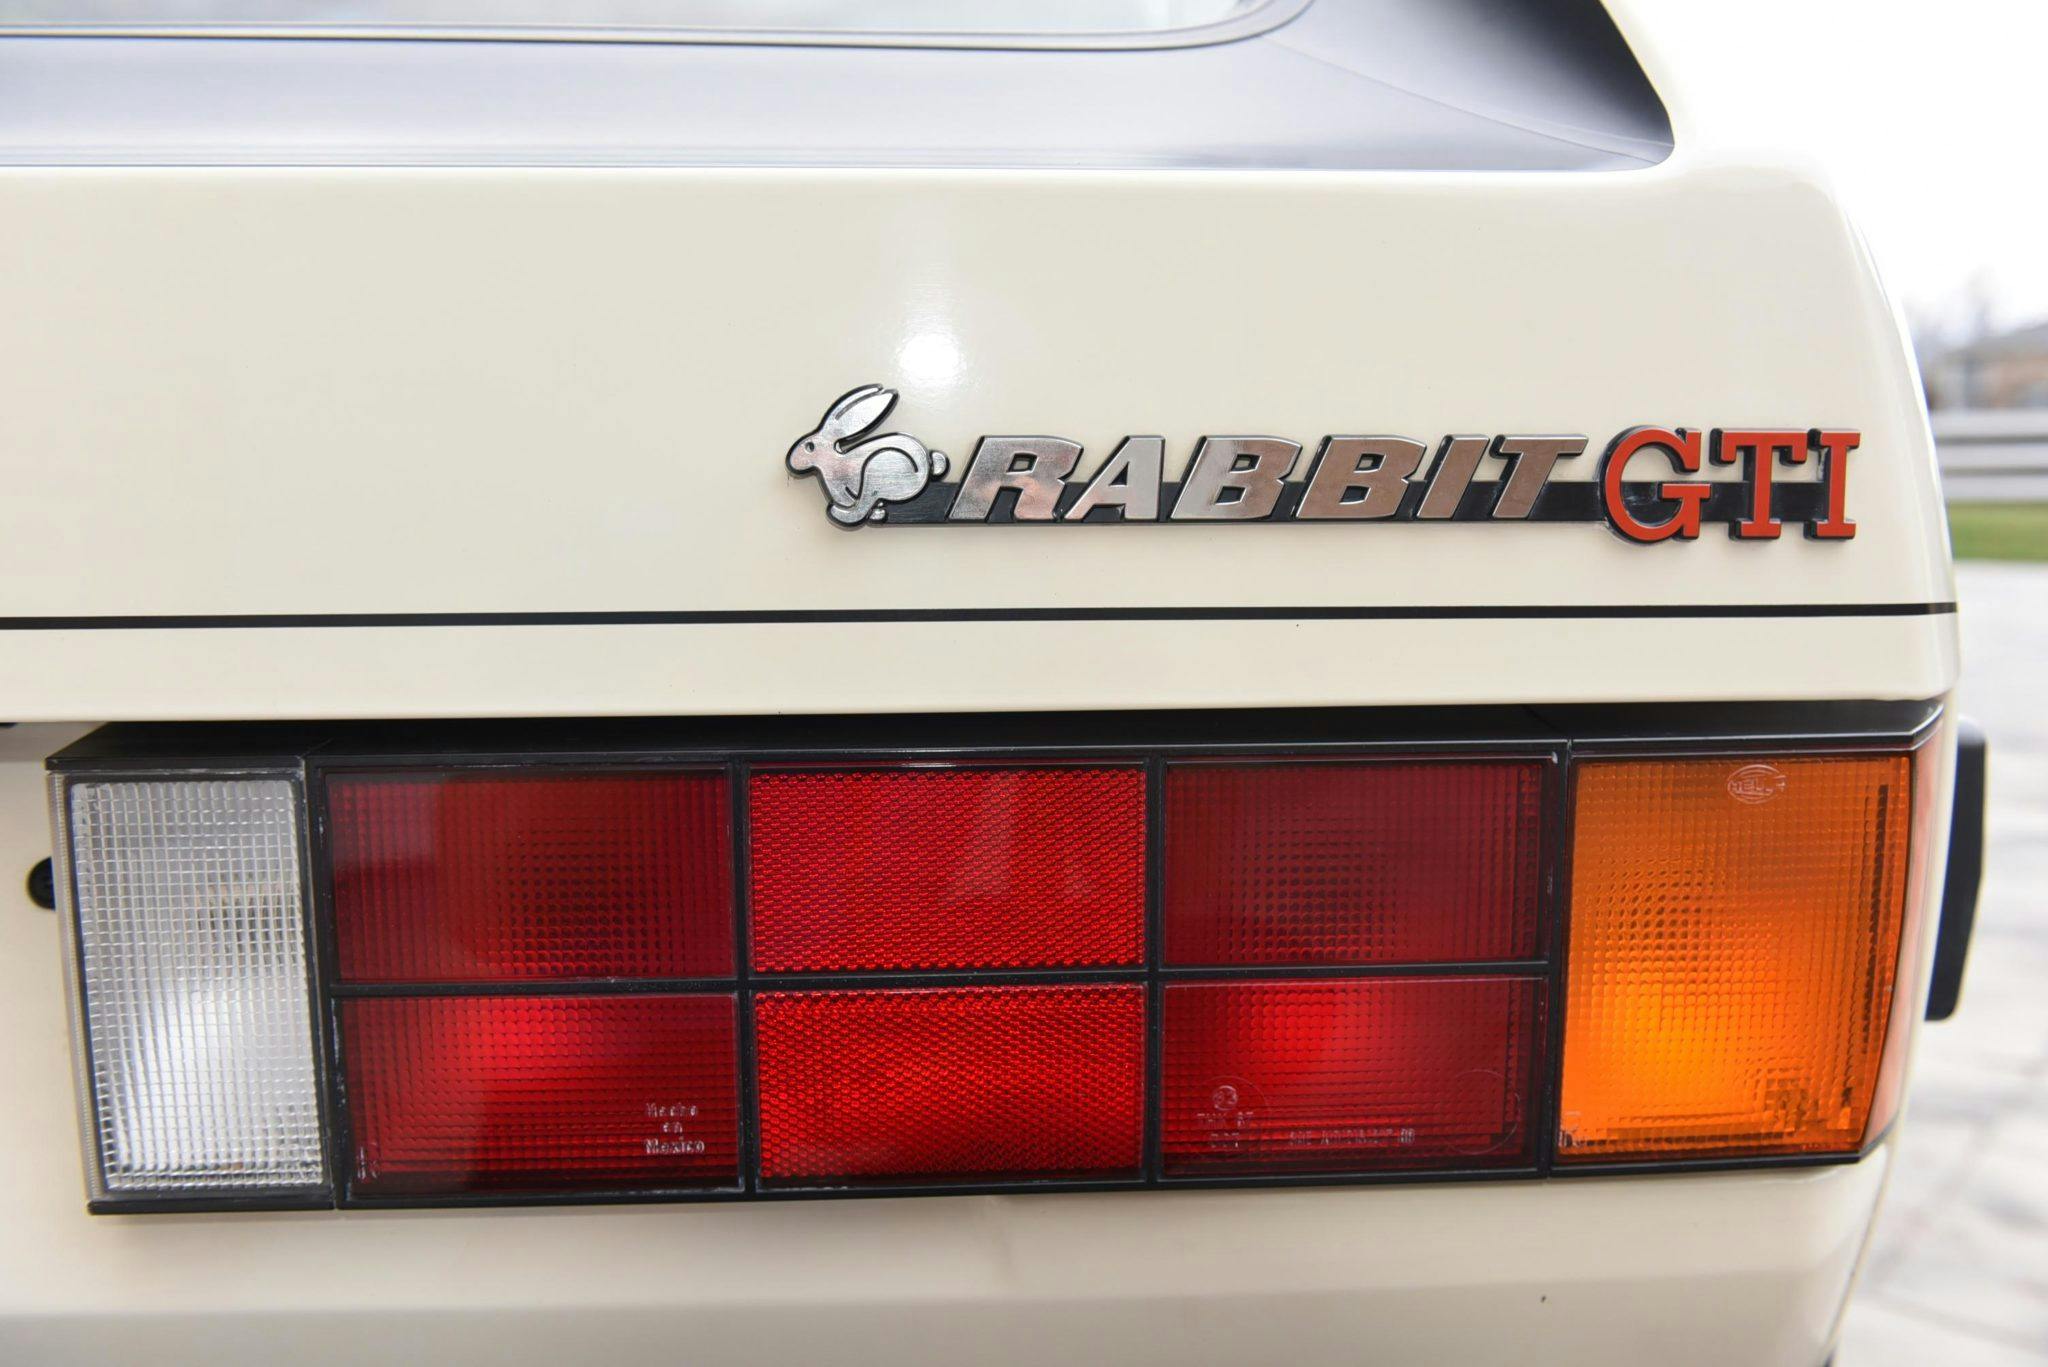 Volkswagen Rabbit GTI Callaway Turbo Stage II Badging